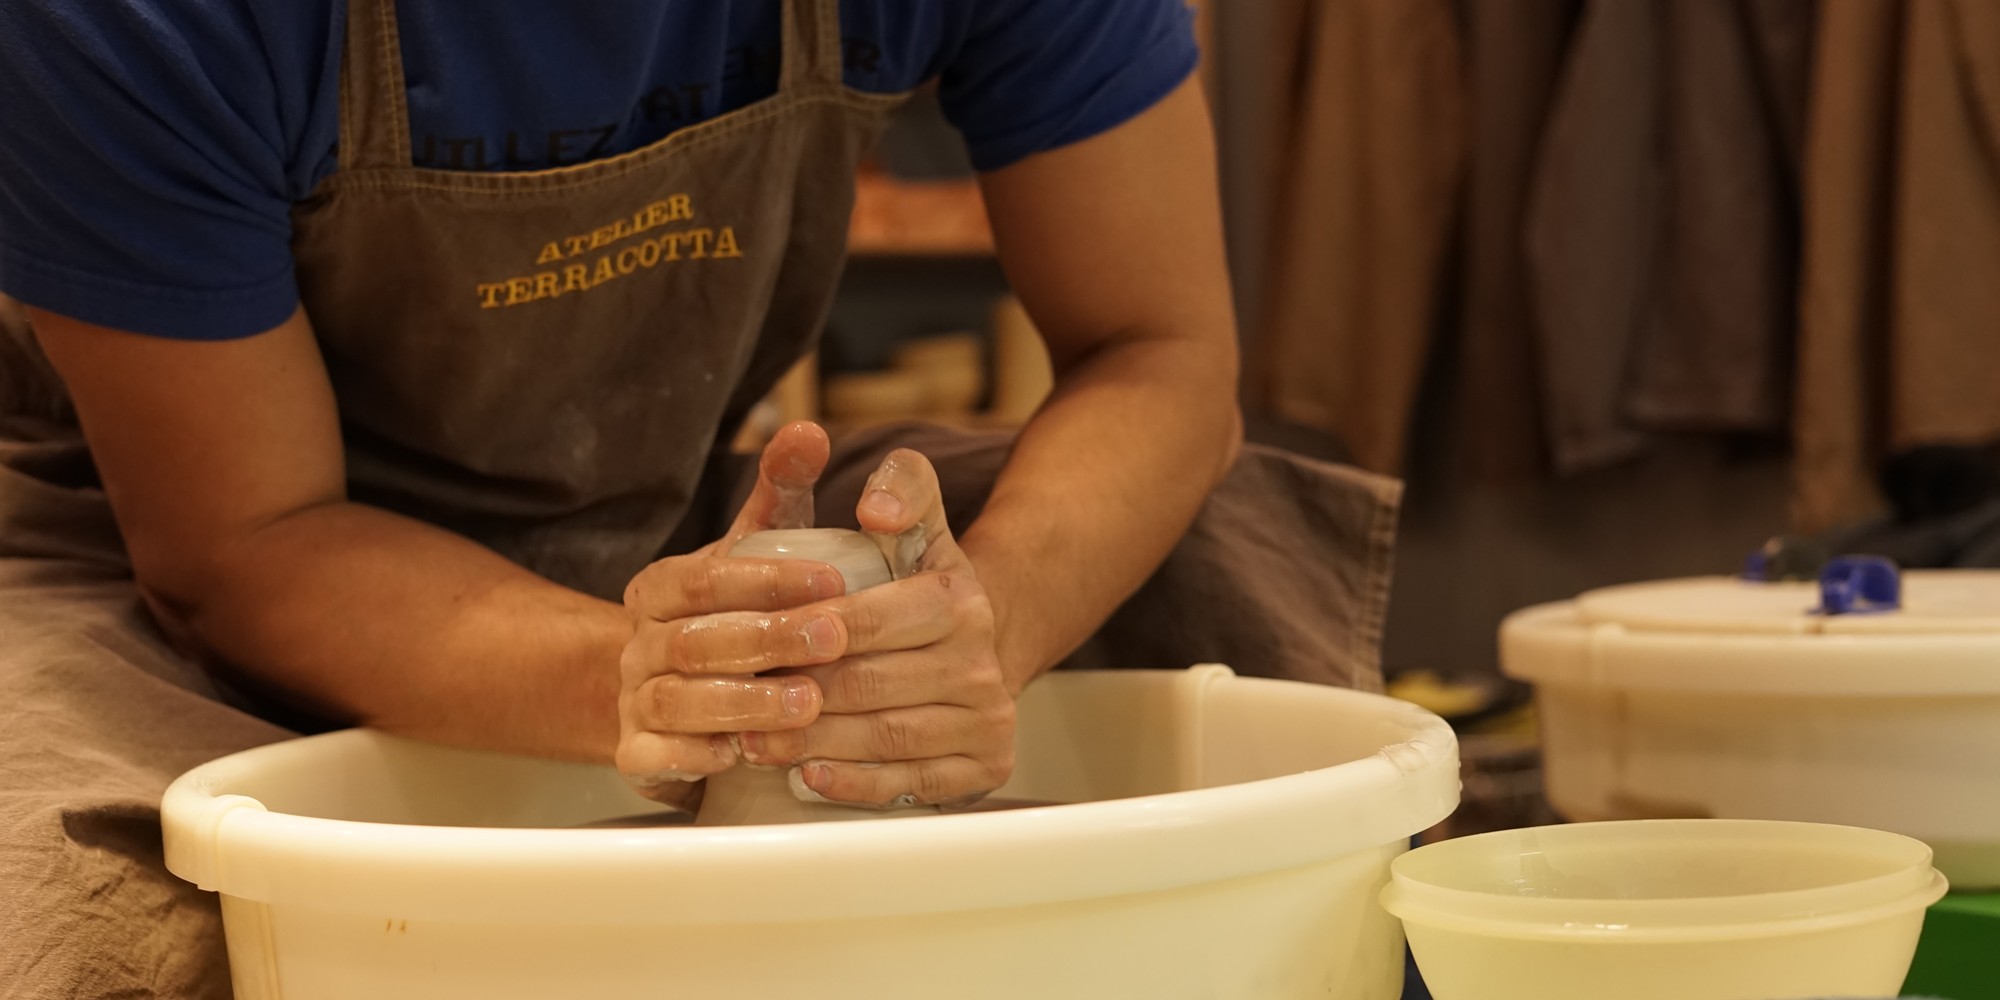 Cours de poterie, céramique et sculpture à Nice - Atelier Terracotta